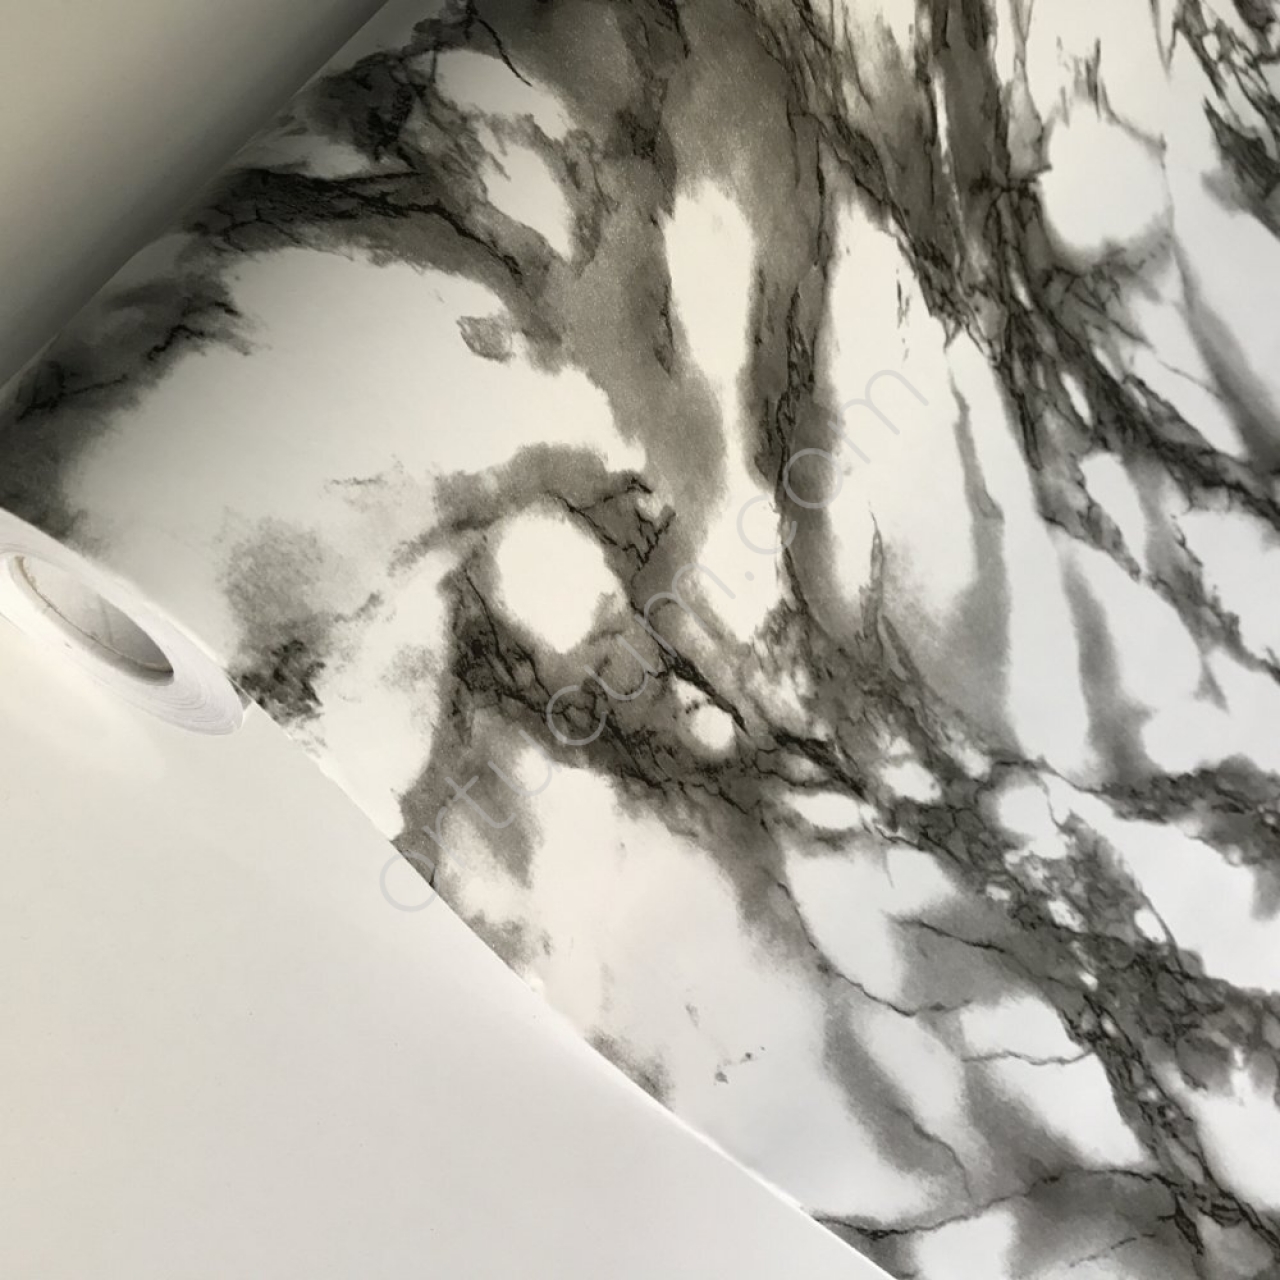 Siyah Beyaz Mermer Desenli Yapışkanlı Folyo Kağıt Kaplama